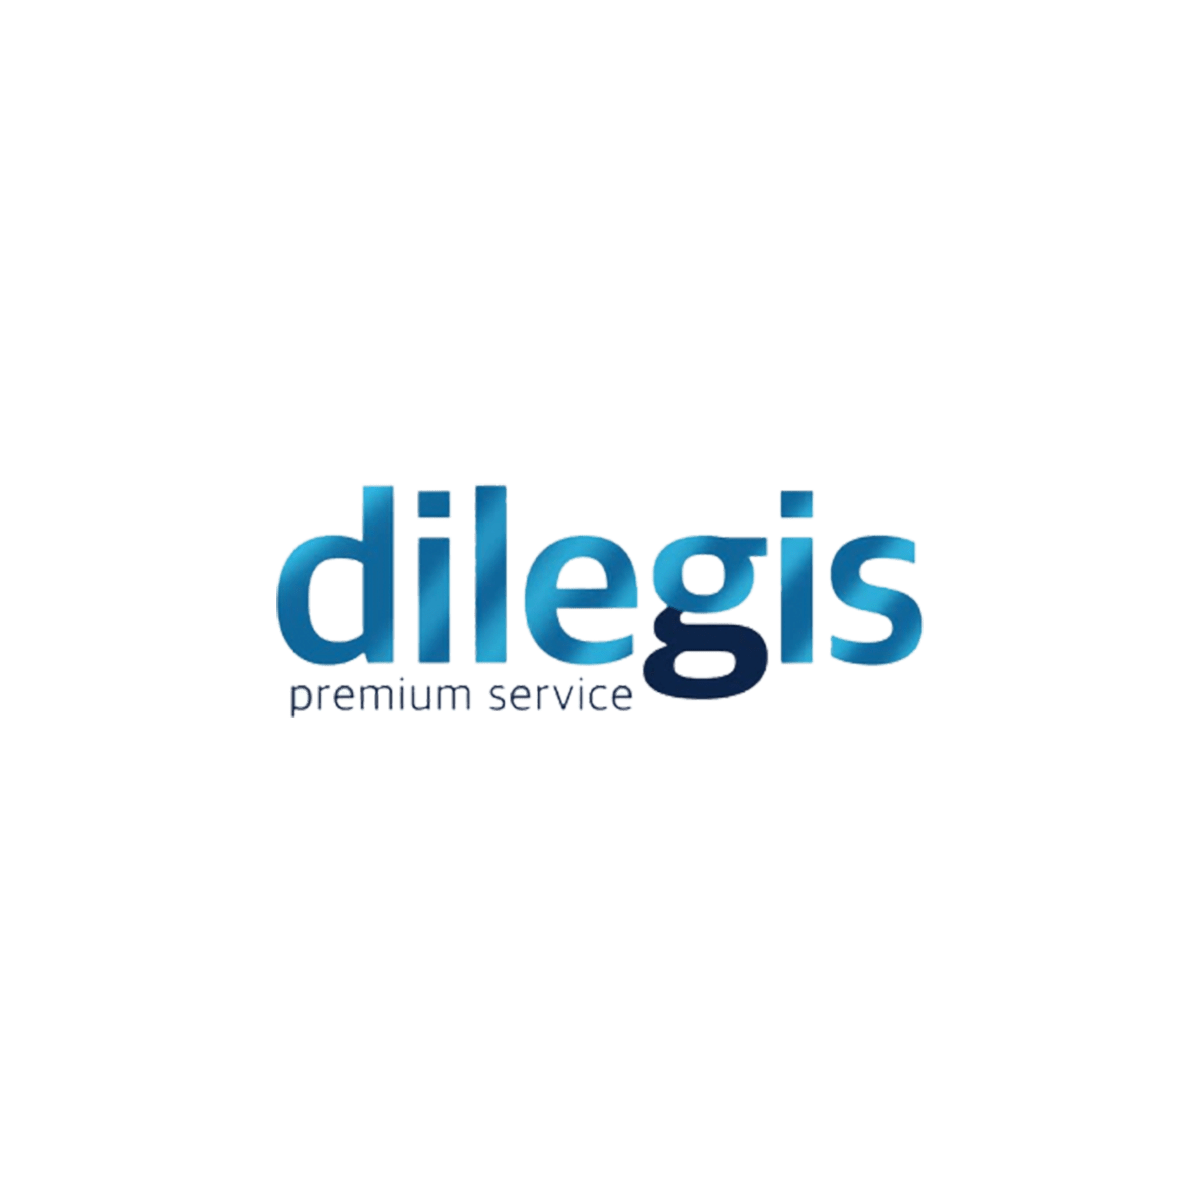 Dilegis Premium Service